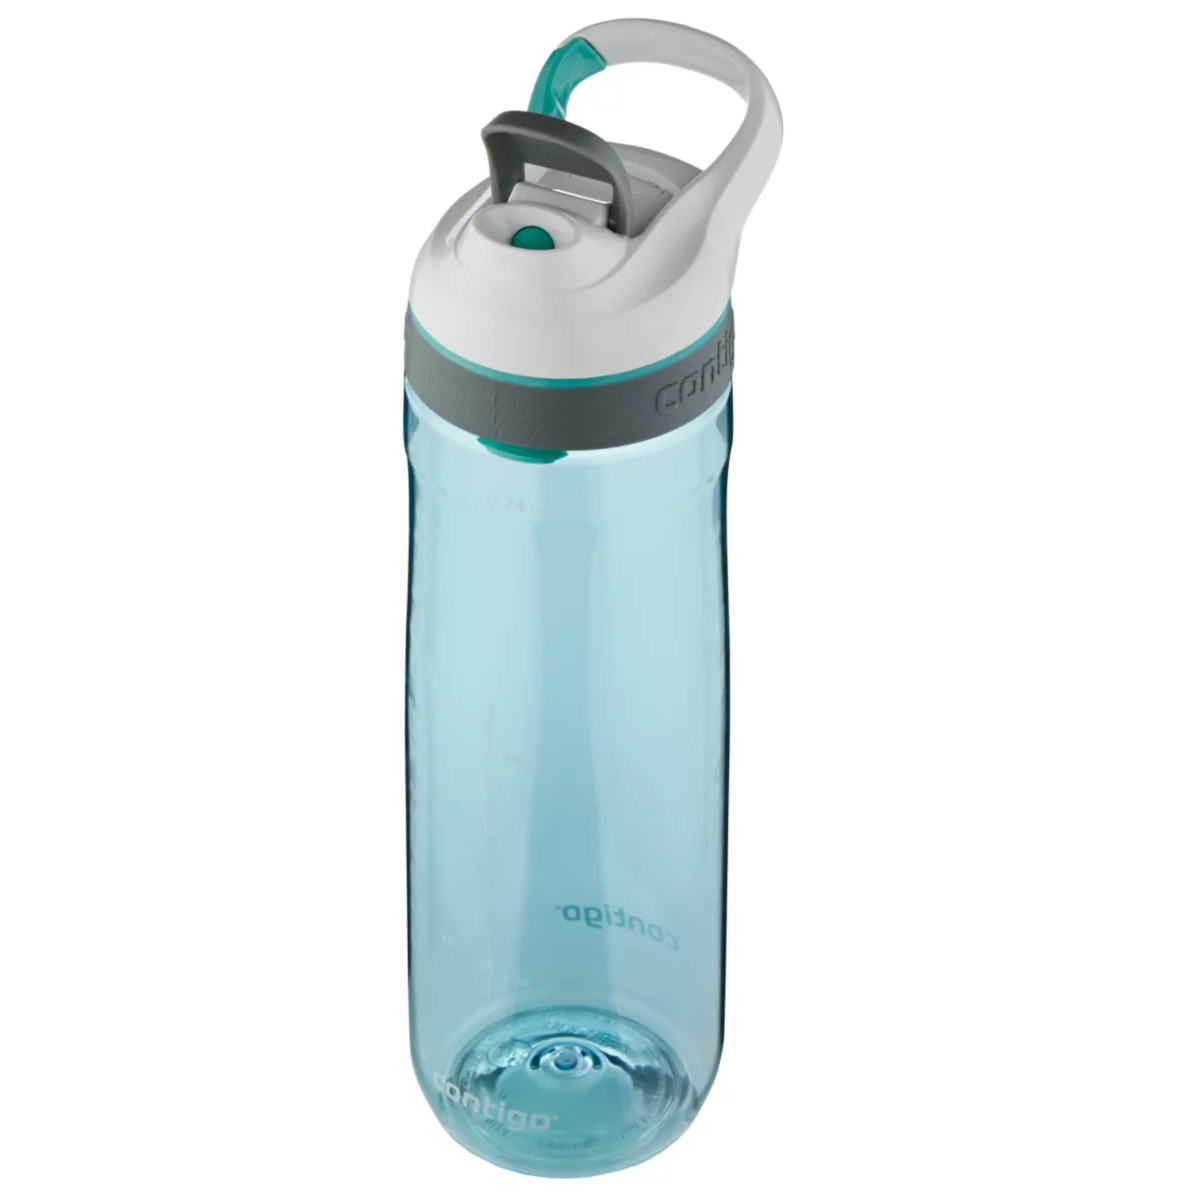 Contigo Cortland Water Bottles With Autoseal Technology